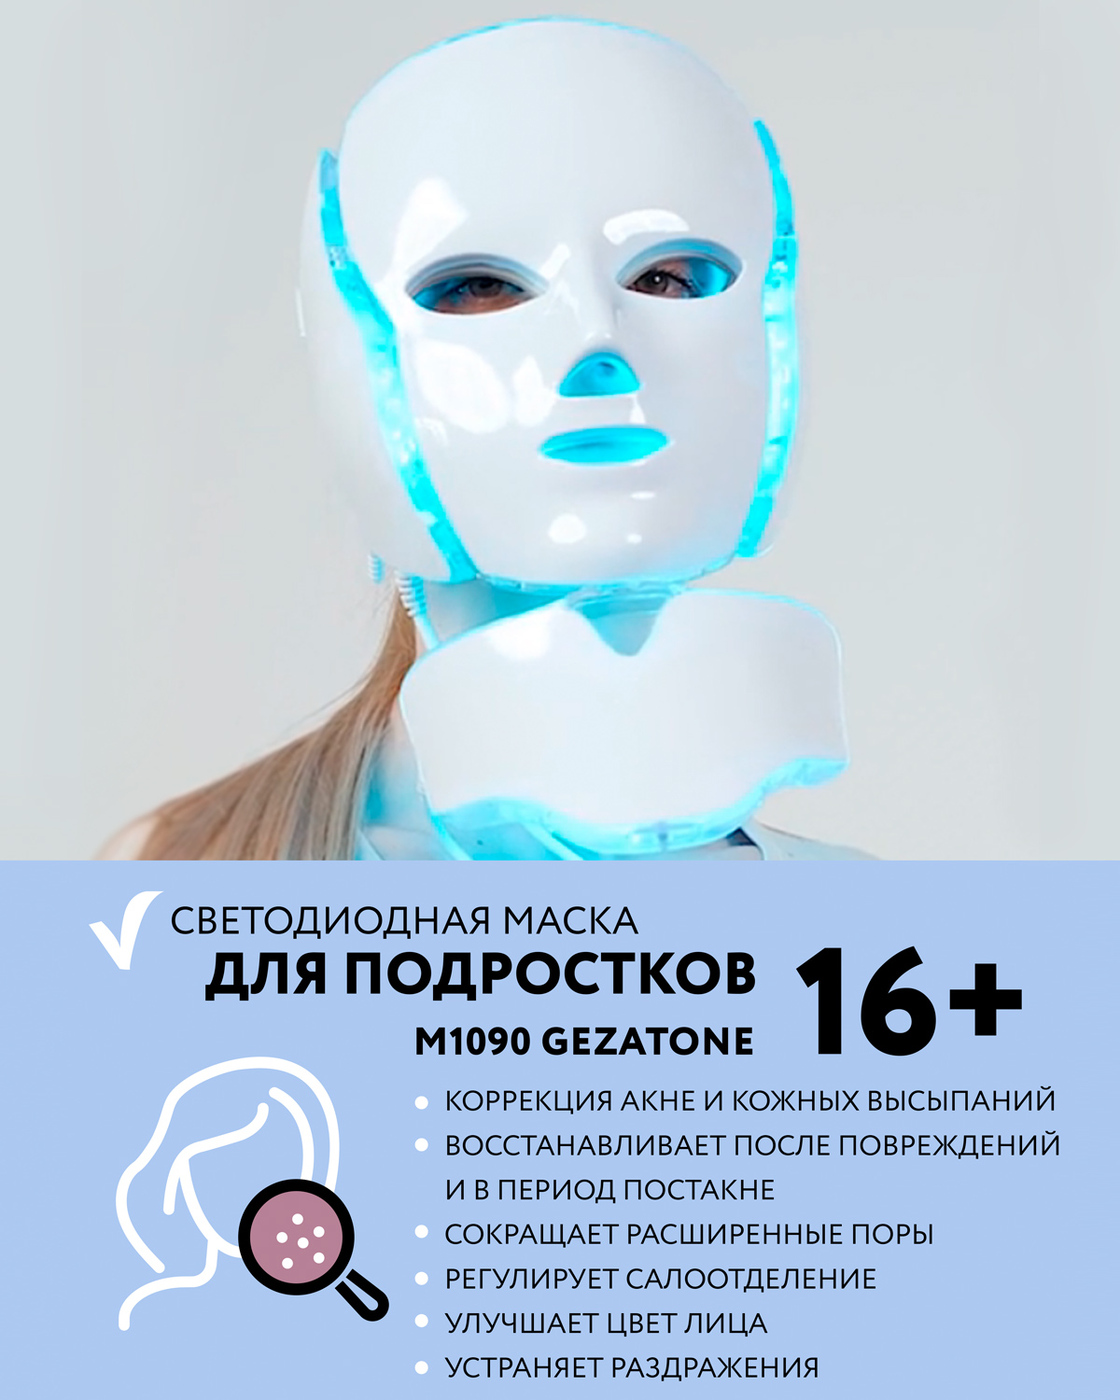 Светодиодная маска gezatone. Светодиодная маска Гезатон. Gezatone 1090 светодиодная маска. Gezatone светодиодная маска для омоложения кожи лица m 1090. Хромотерапия для лица.